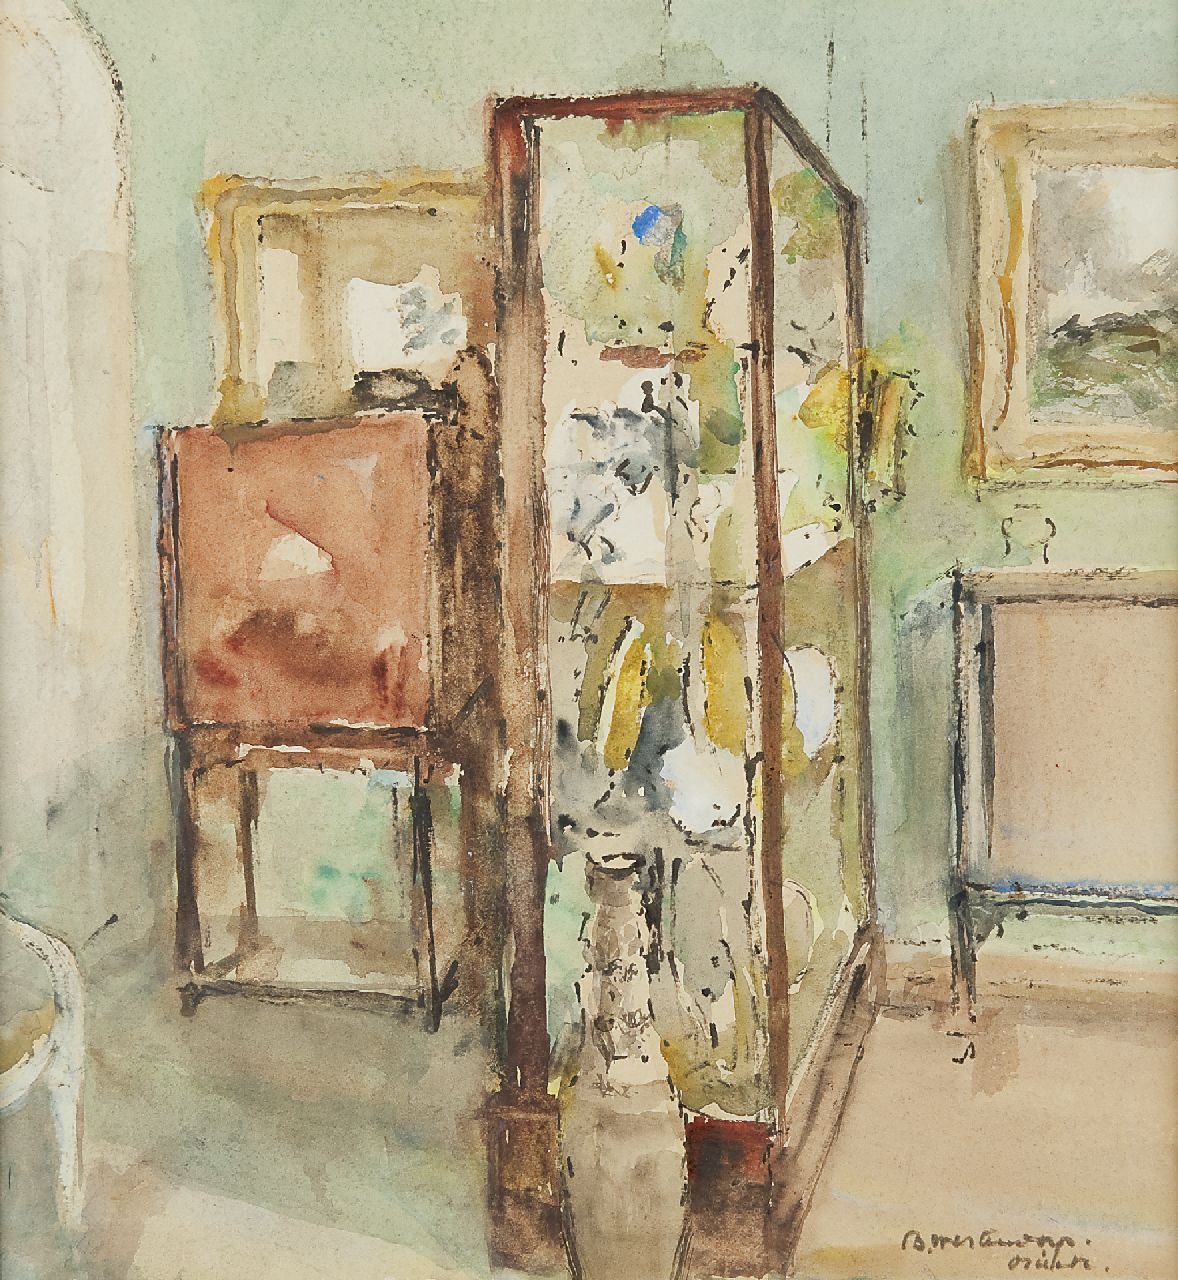 Betsy Osieck | Interieur met vitrine, aquarel op papier, 32,0 x 30,0 cm, gesigneerd r.o.